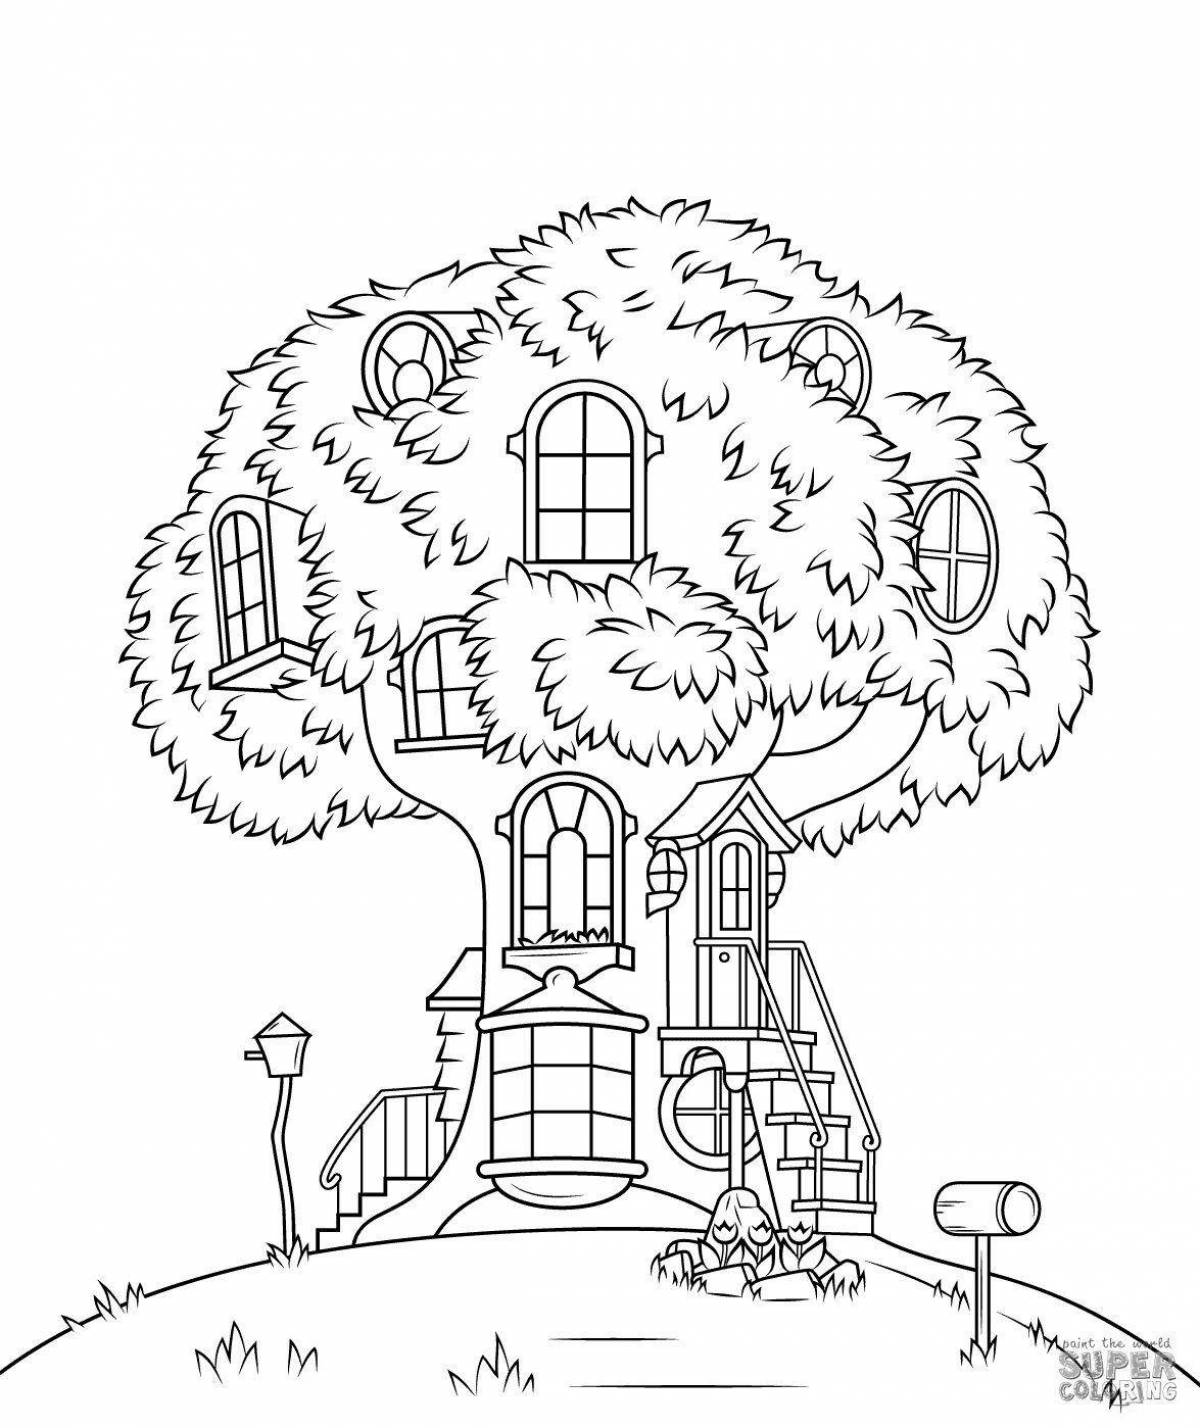 Домик на дереве раскраска для детей